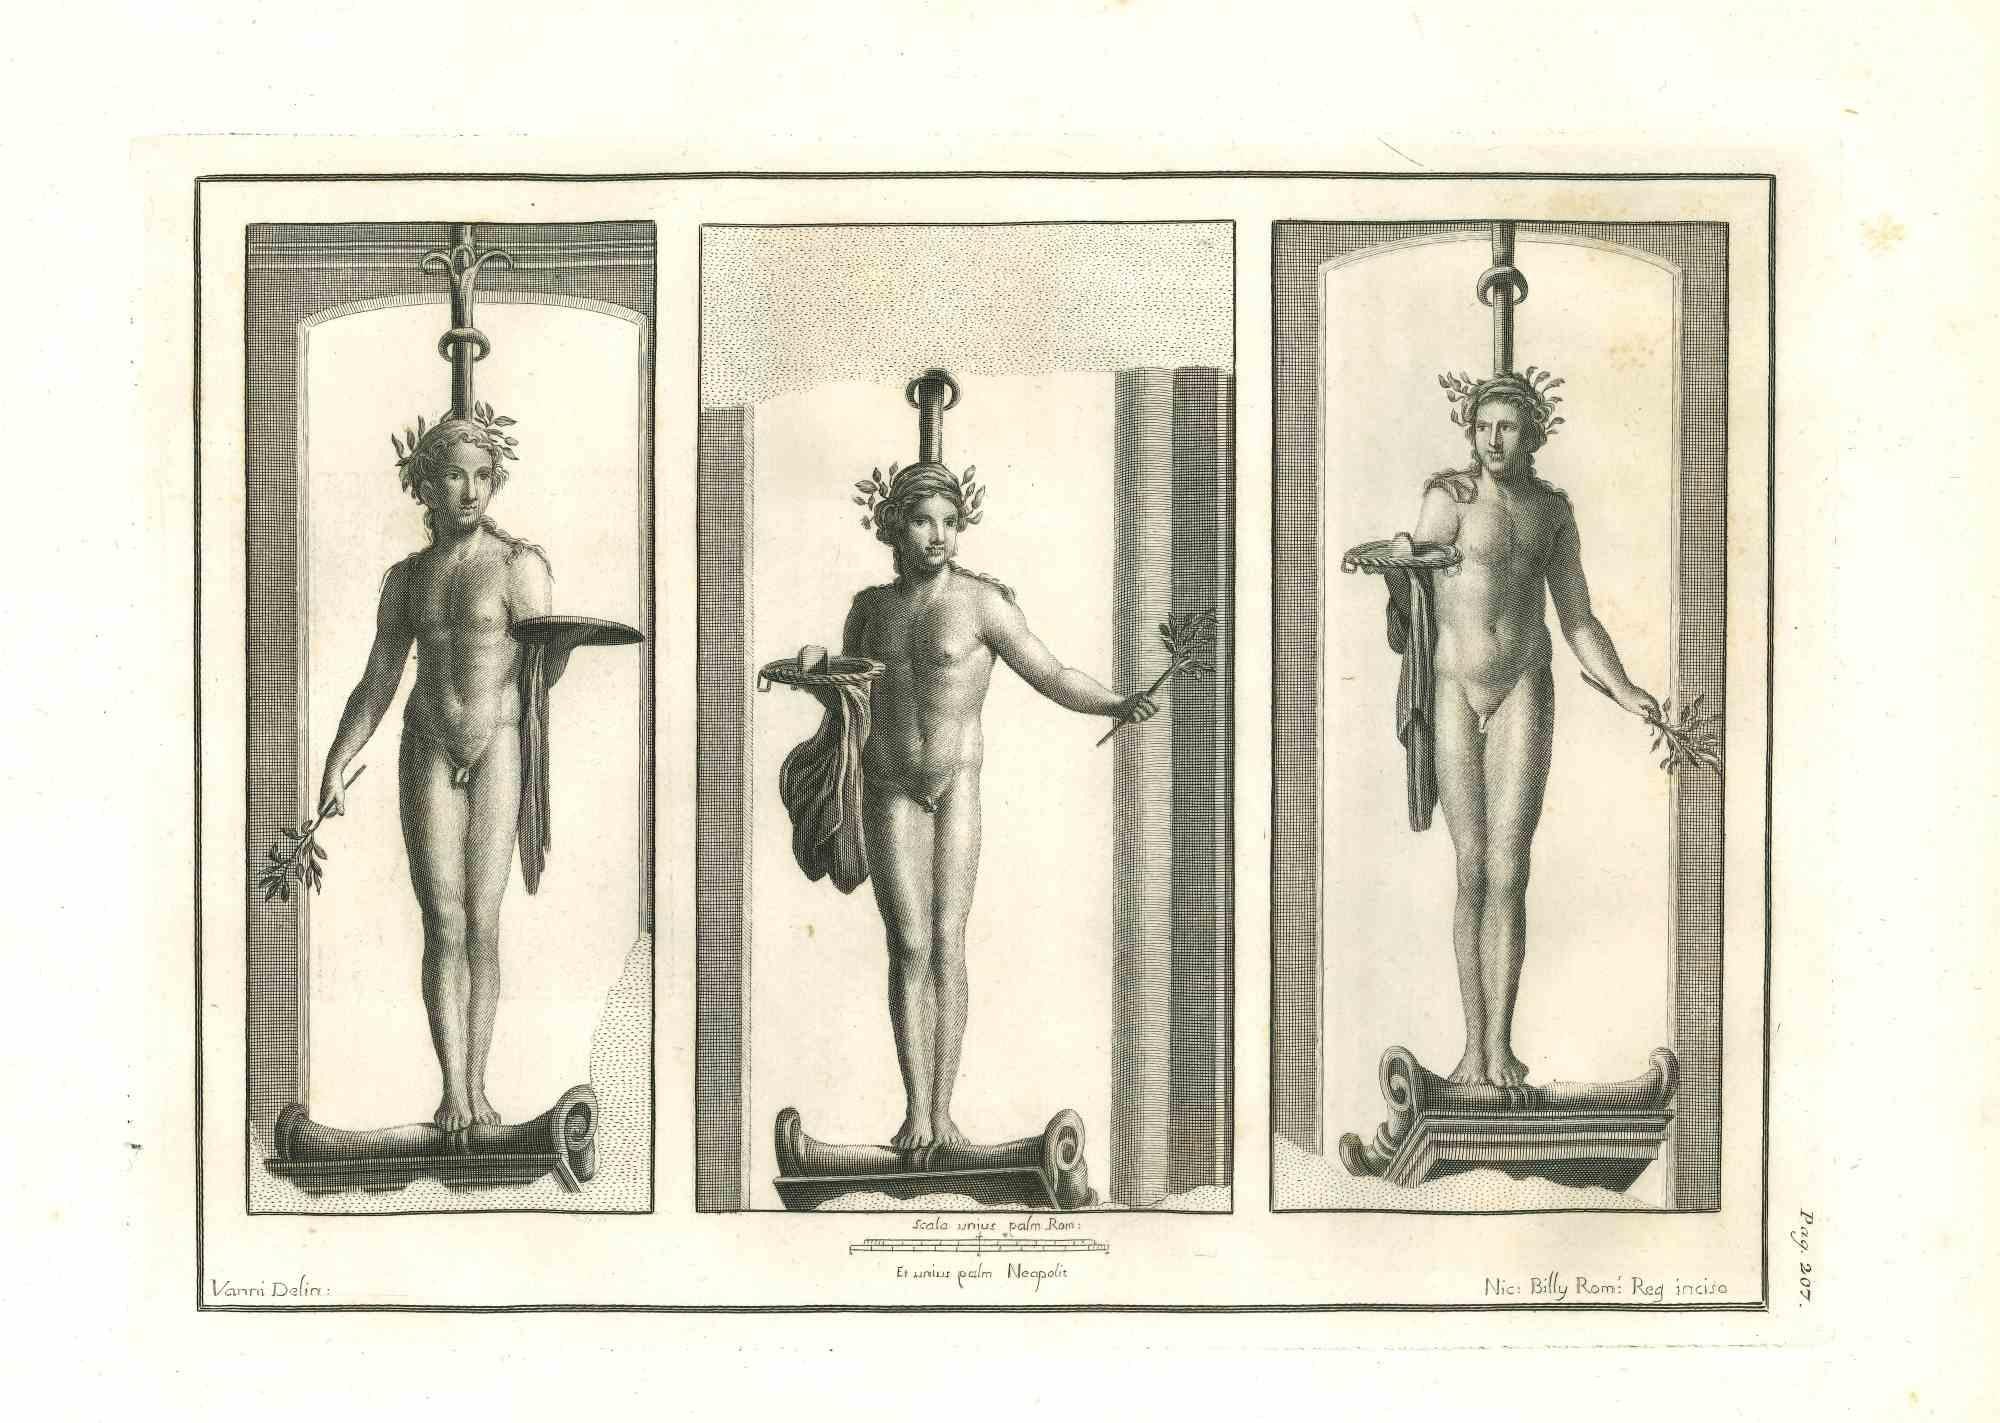 Antike römische Statuen aus der Serie "Altertümer von Herculaneum", ist eine Originalradierung auf Papier von Nicola Billy aus dem 18. Jahrhundert.

Signiert auf der Platte.

Guter Zustand bis auf einige kleine Flecken.

Die Radierung gehört zu der